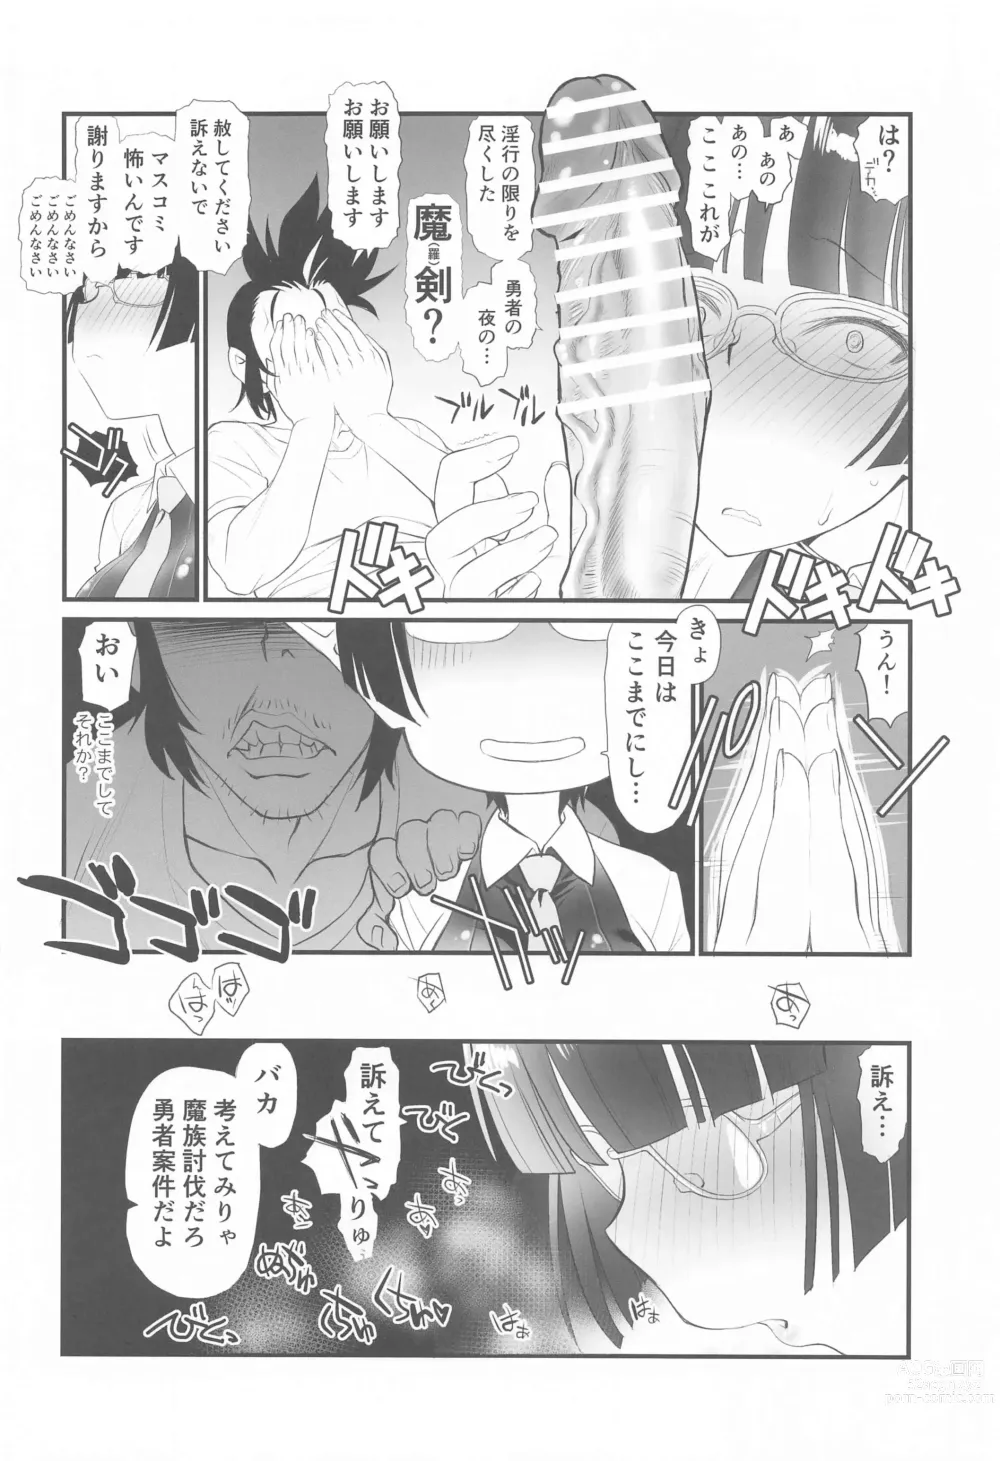 Page 6 of doujinshi Lv1 Maou to Hamiketsu Hishokan